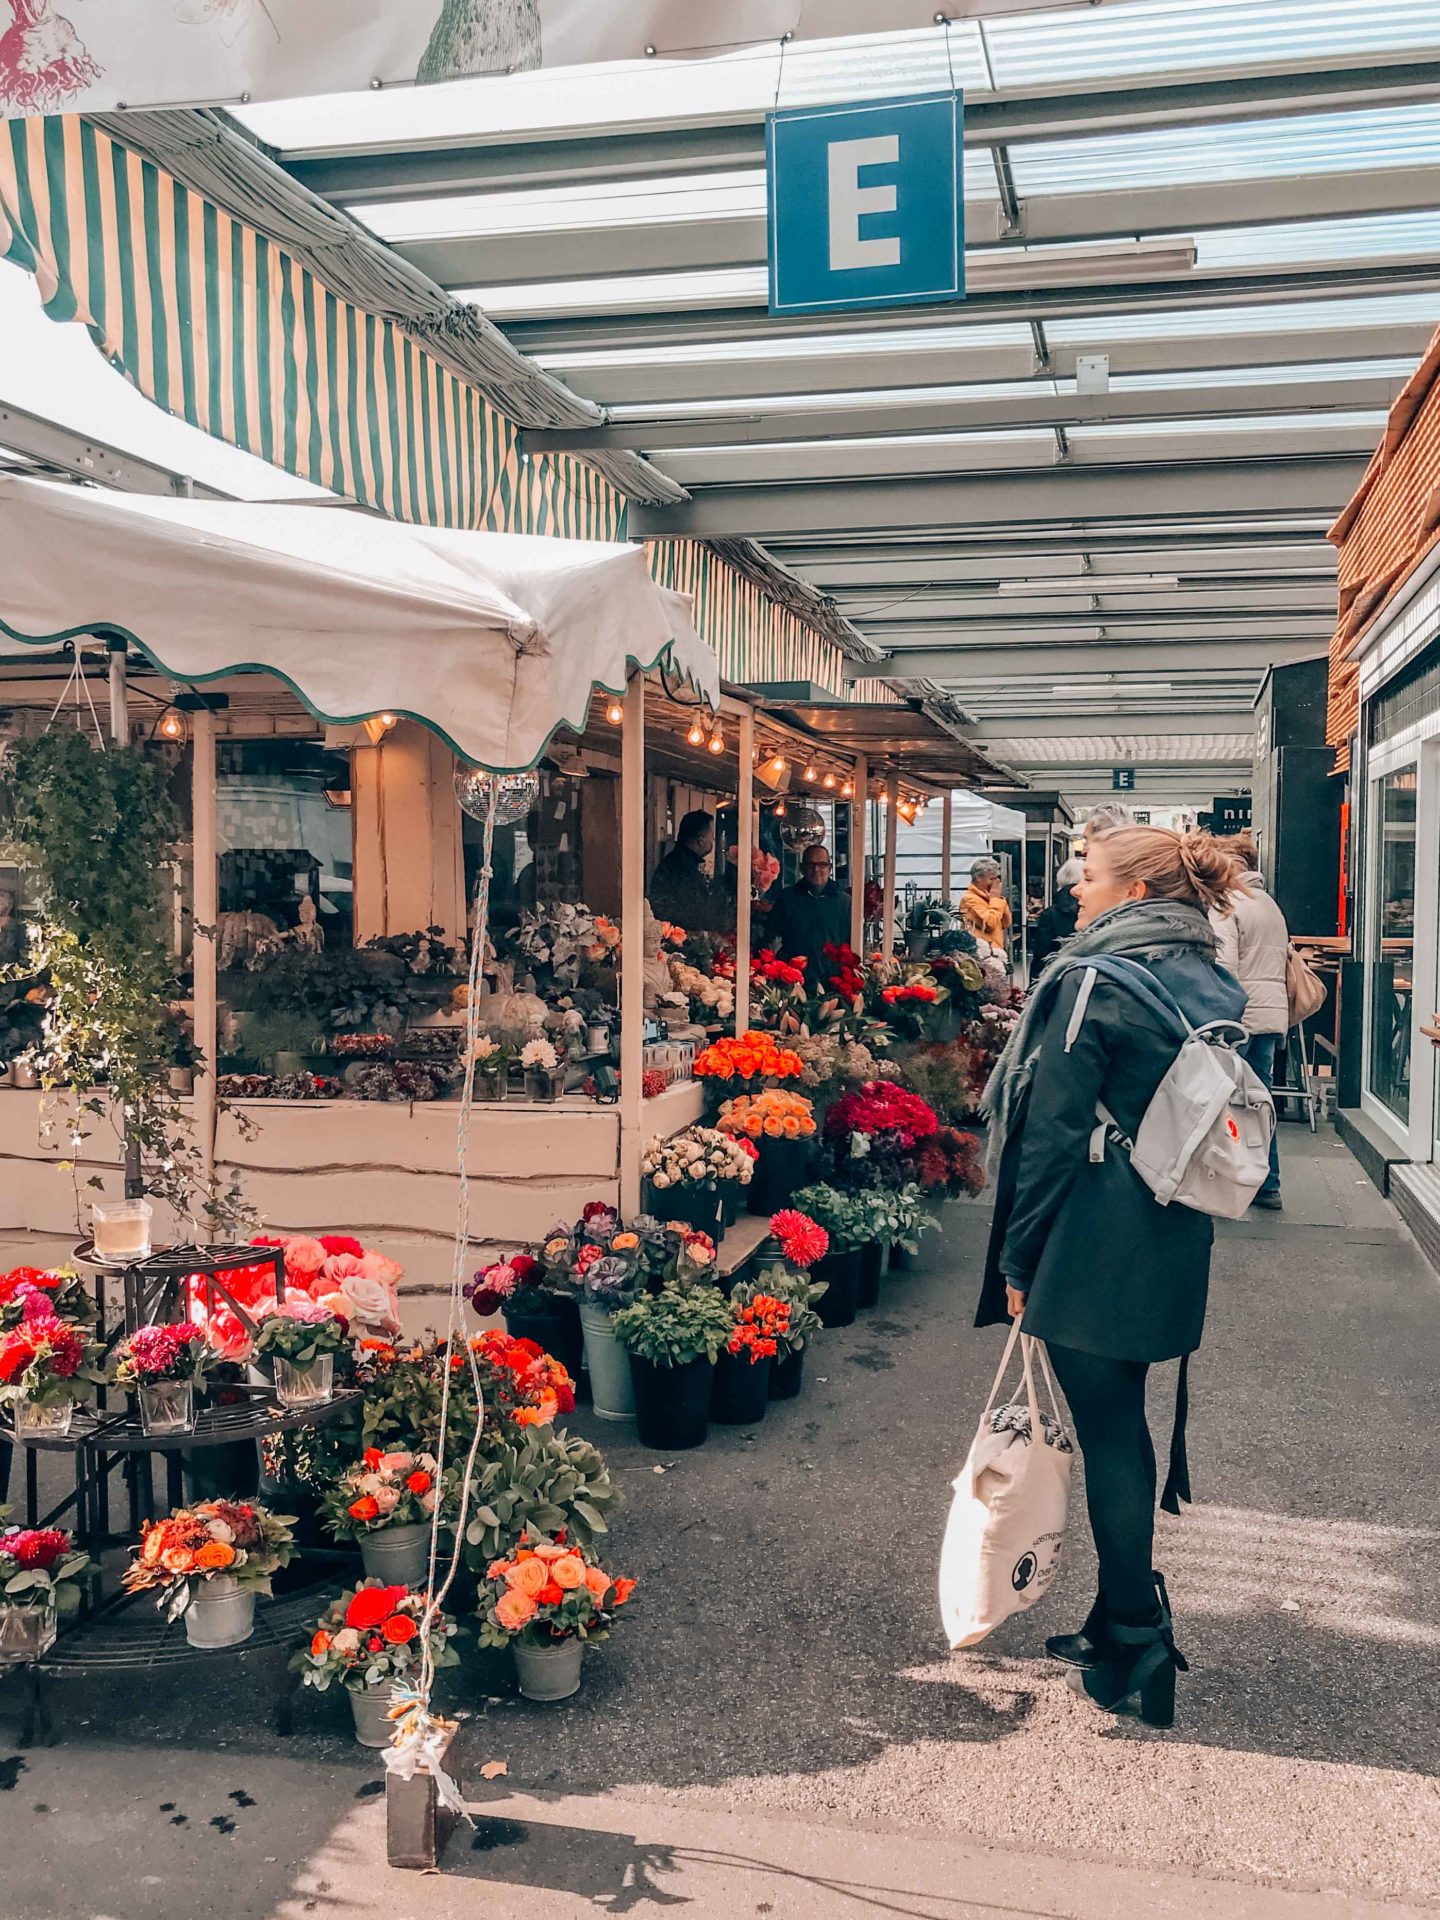 The lovely stalls in Carlsplatz market, Dusseldorf